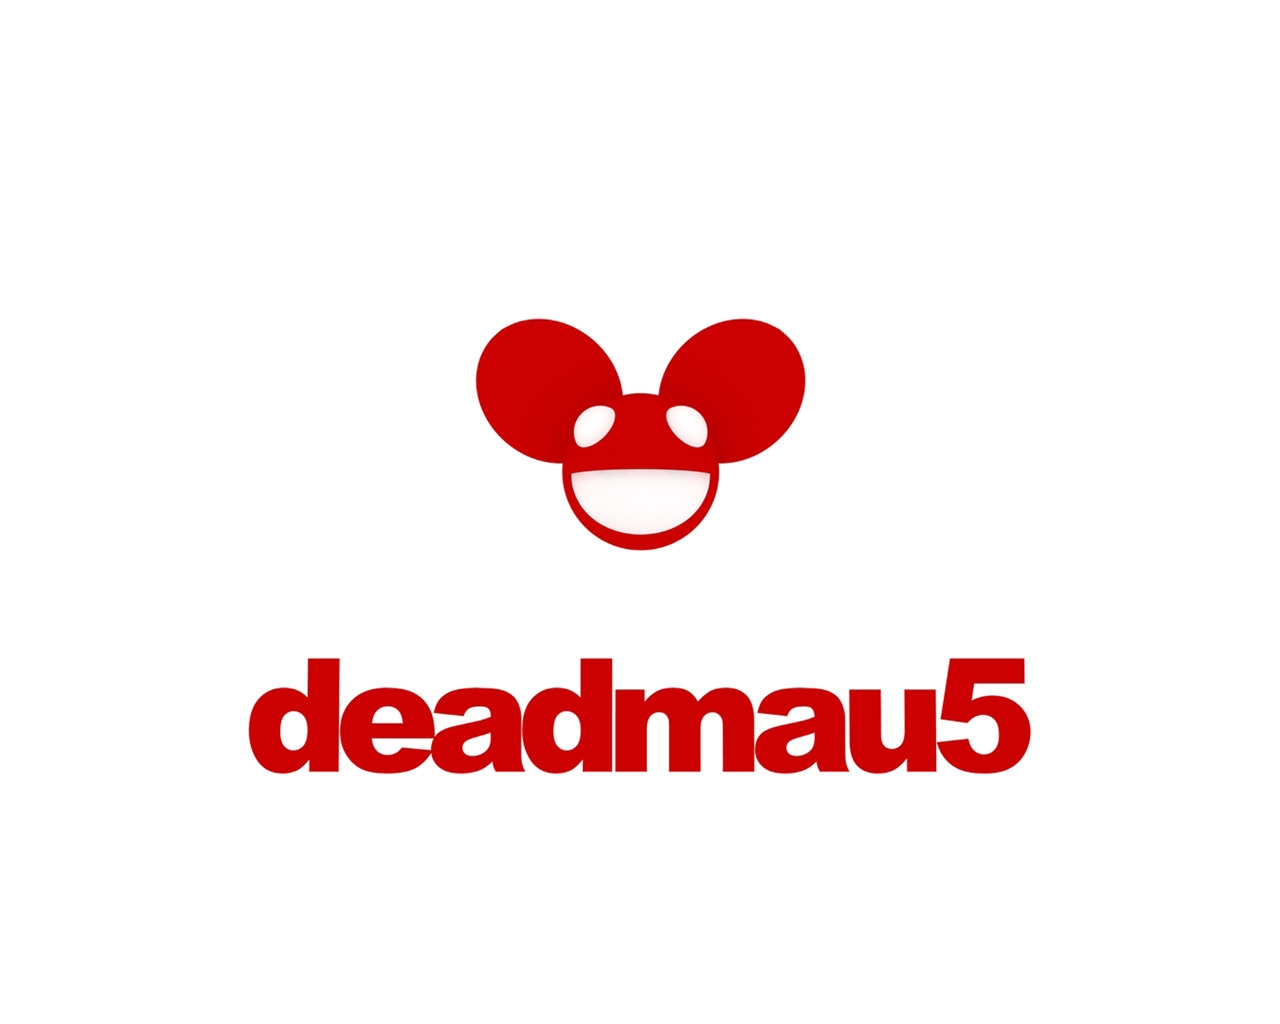 Deadmau5 Logo for 1280 x 1024 resolution